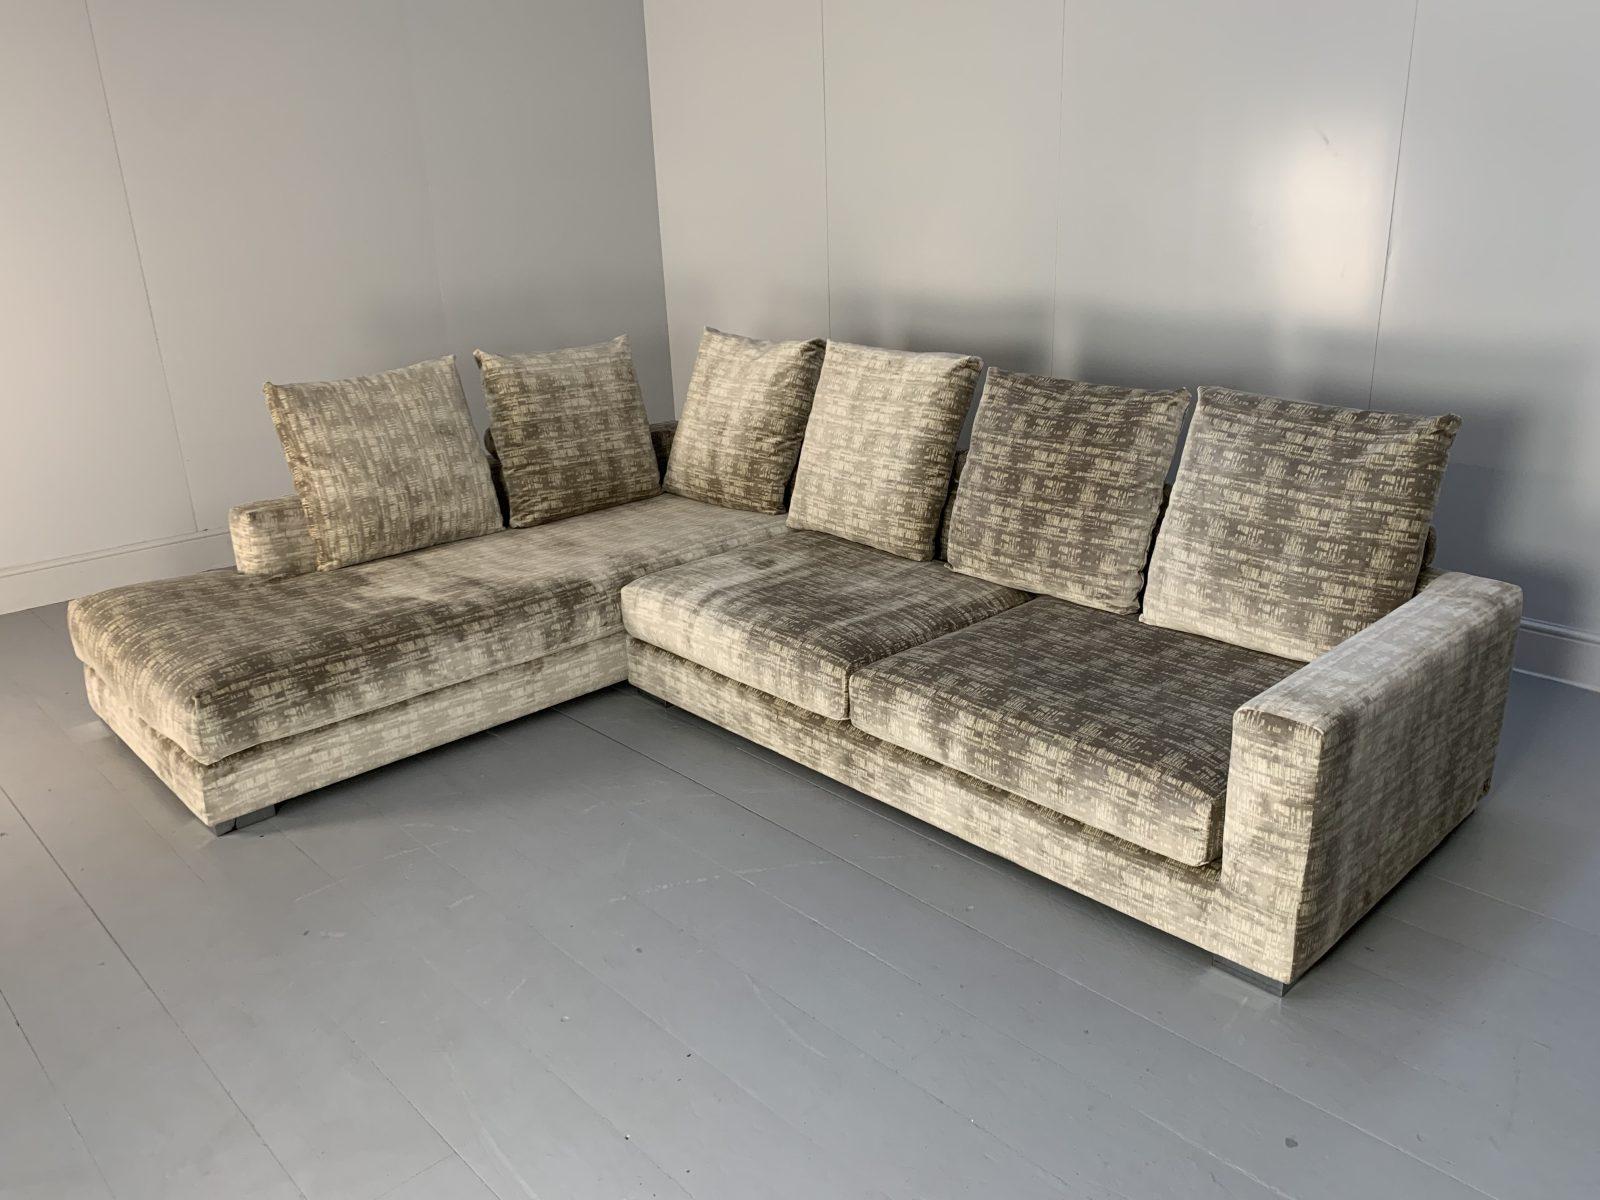 Bonjour les amis, et bienvenue à une nouvelle offre incontournable de Lord Browns Furniture, la première source de canapés et de chaises de qualité au Royaume-Uni.

Nous vous proposons un superbe canapé 6 places en forme de L de la célèbre maison